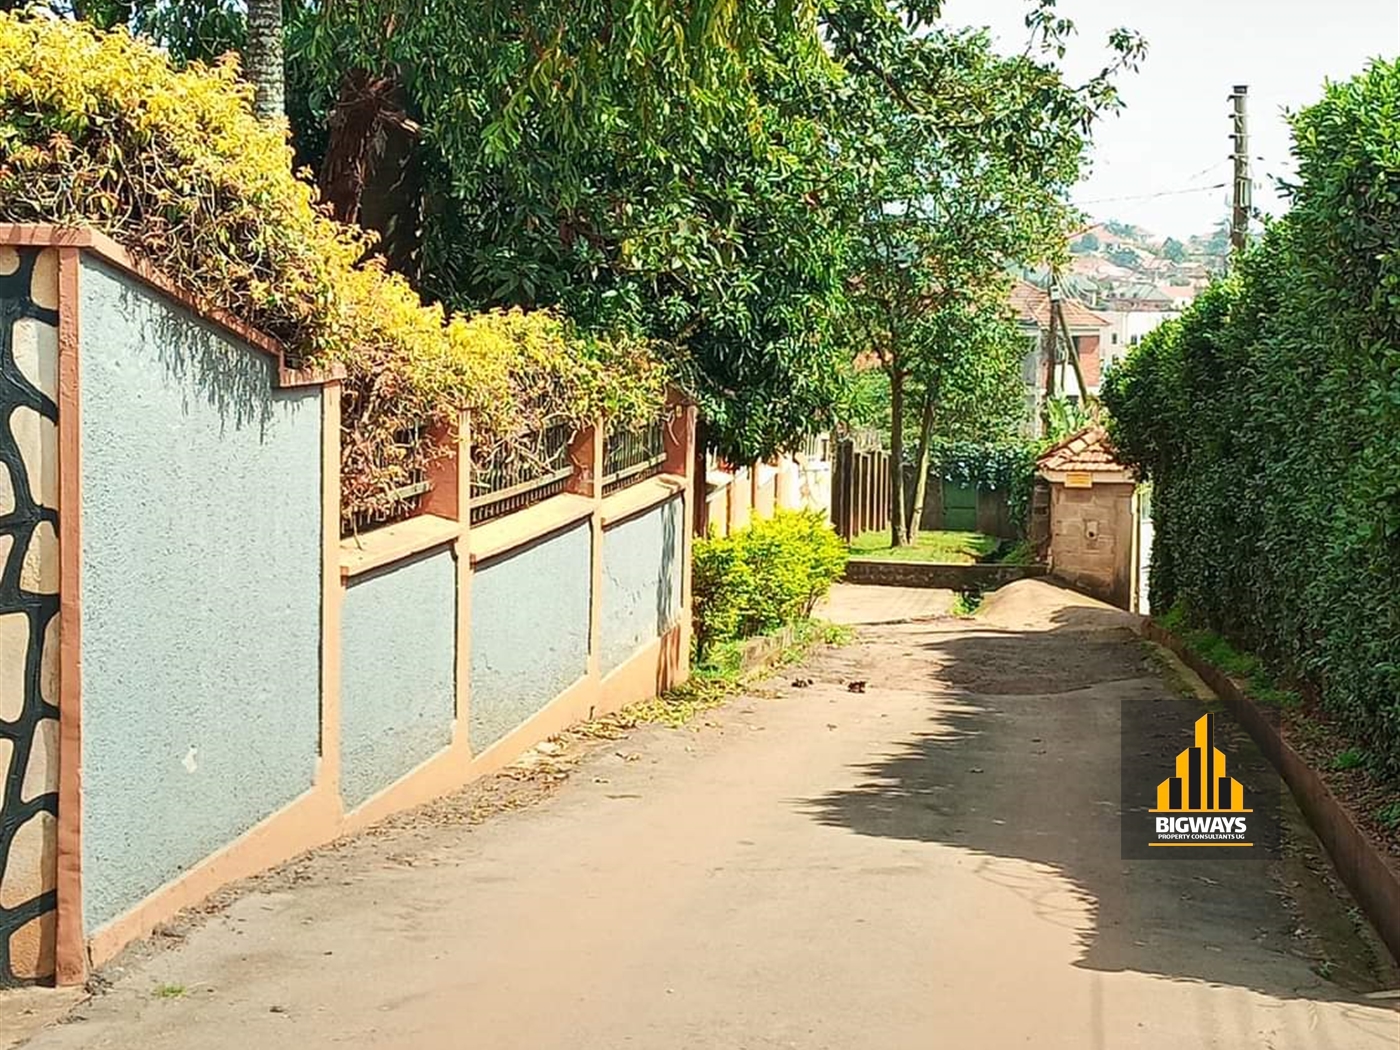 Apartment block for sale in Ntinda Kampala